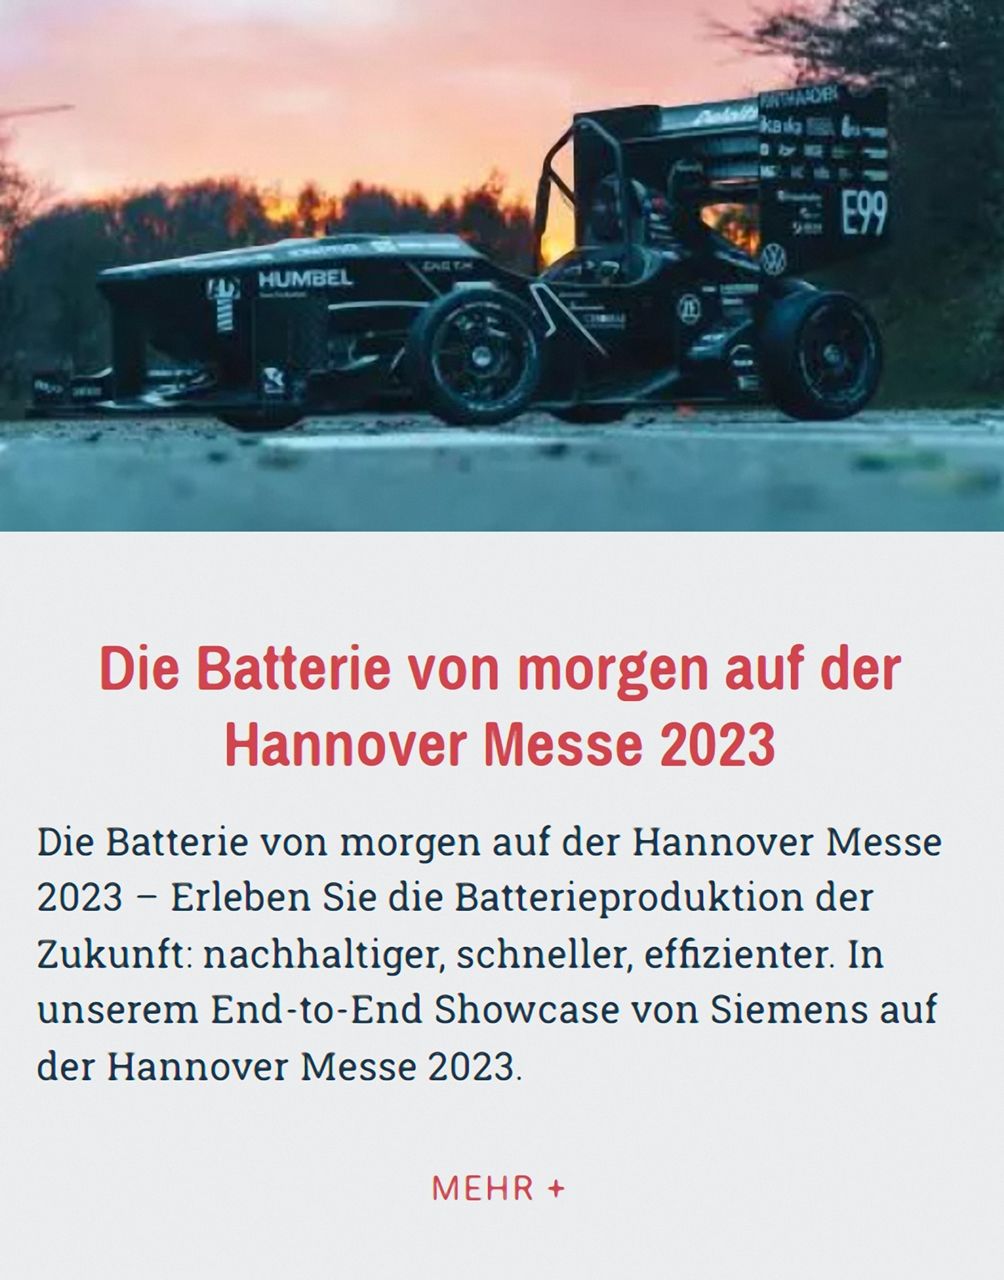 Siemens Hannover Messe 2023 - Batterieproduktion